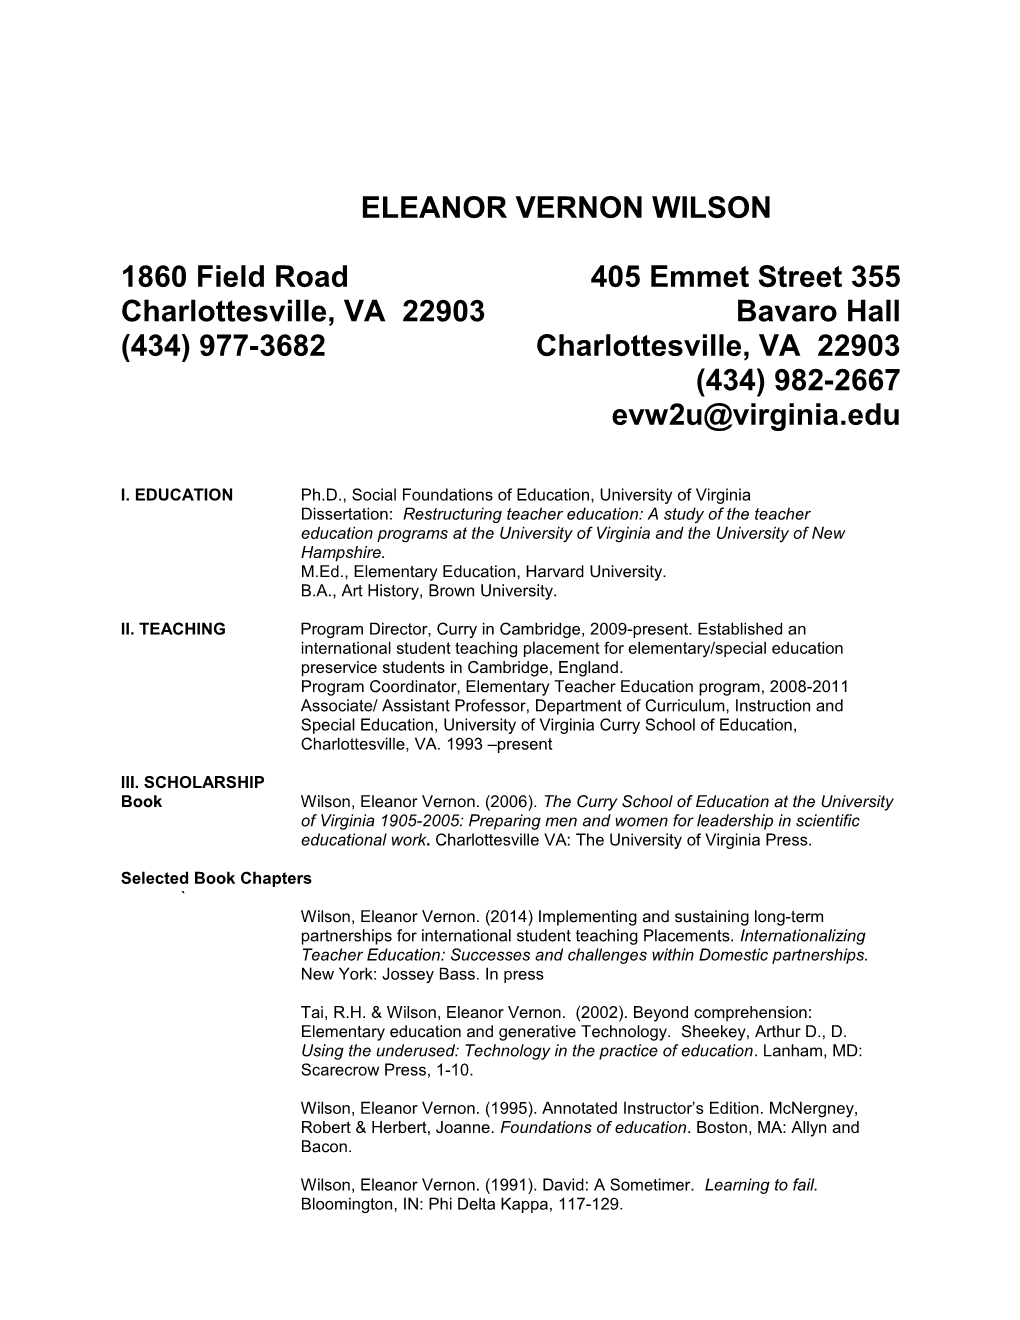 Eleanor Vernon Wilson